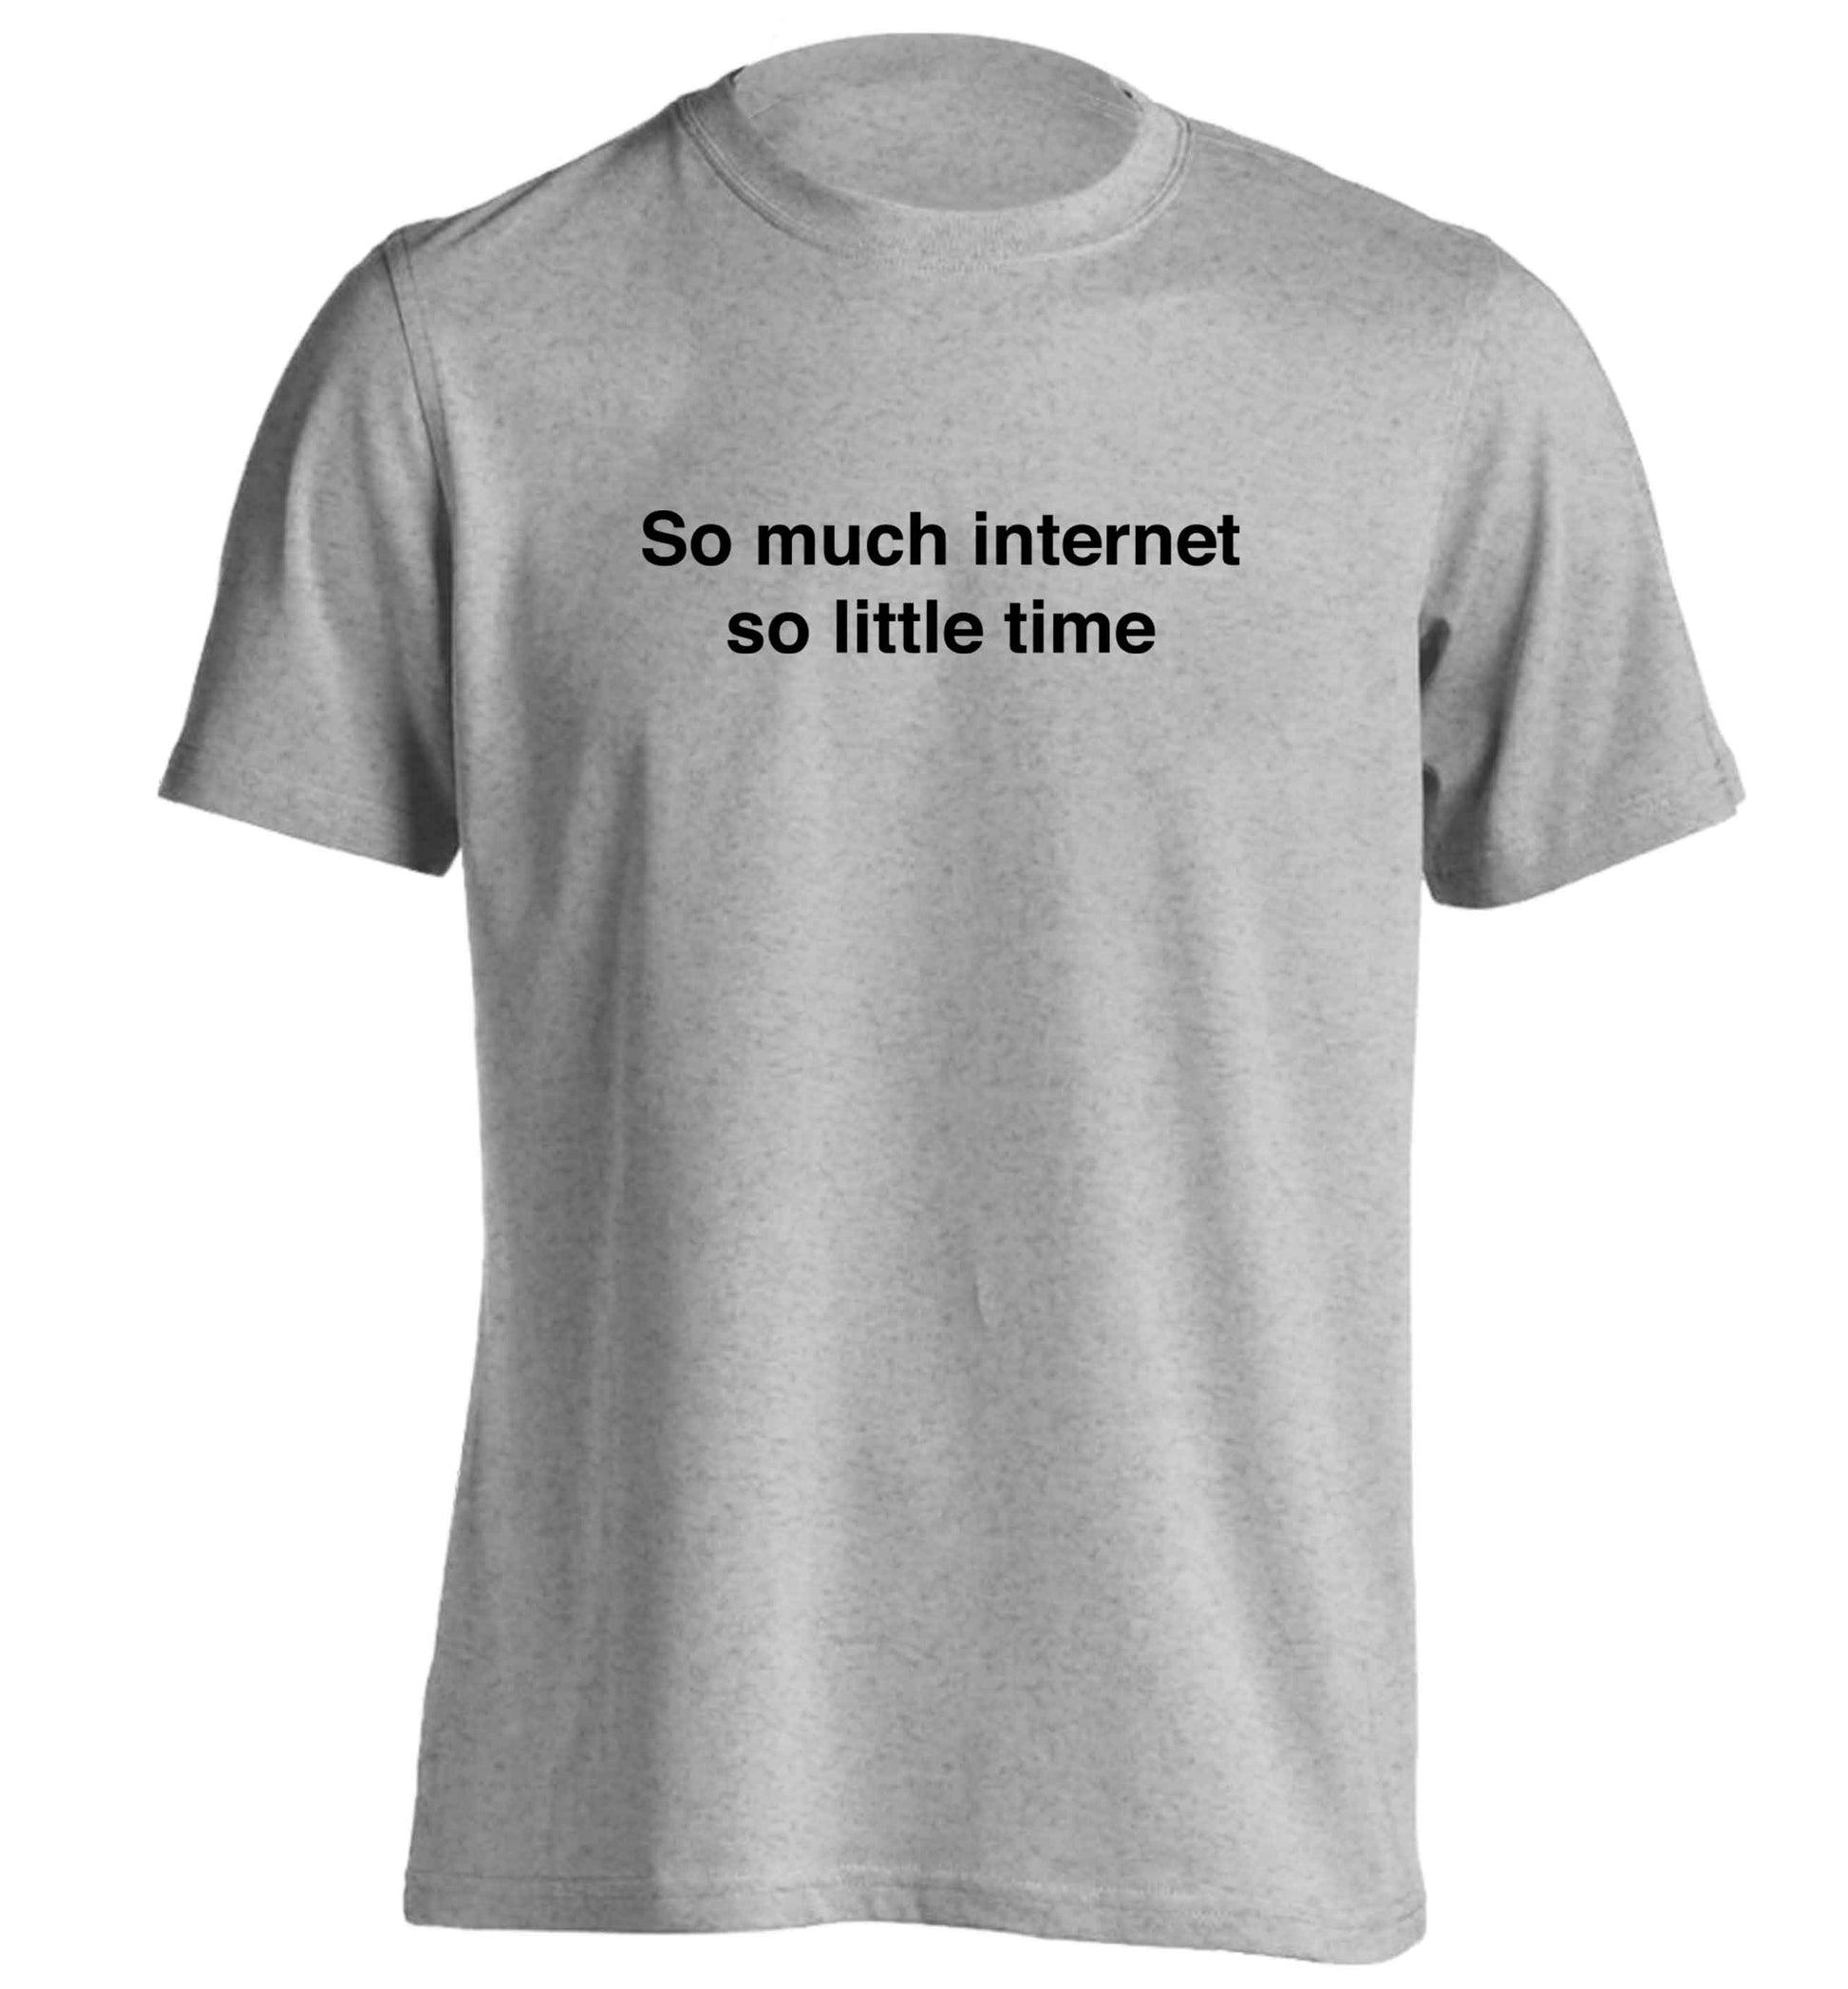 So much internet so little time adults unisex grey Tshirt 2XL